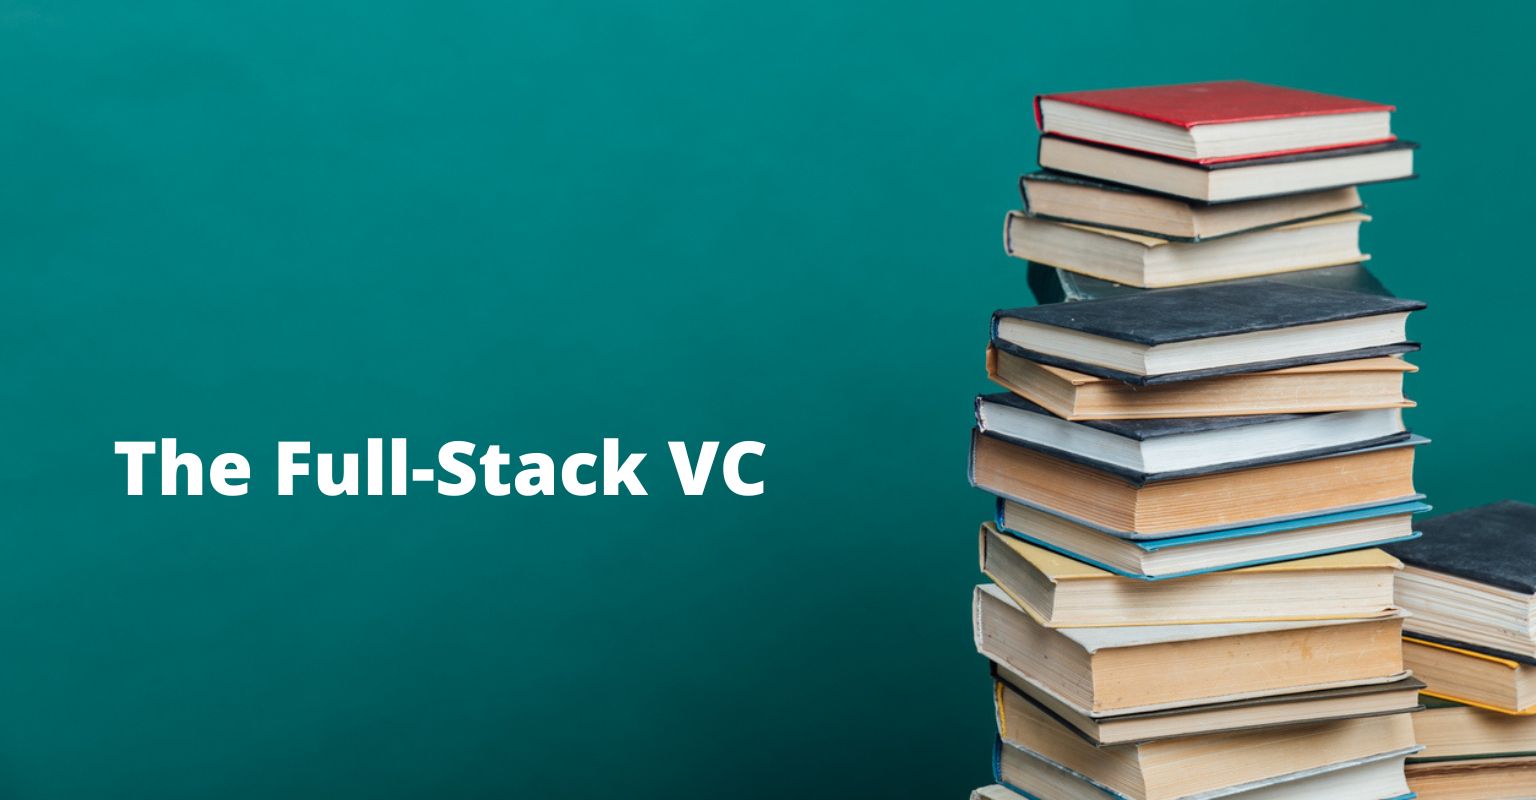 Full-stack VC